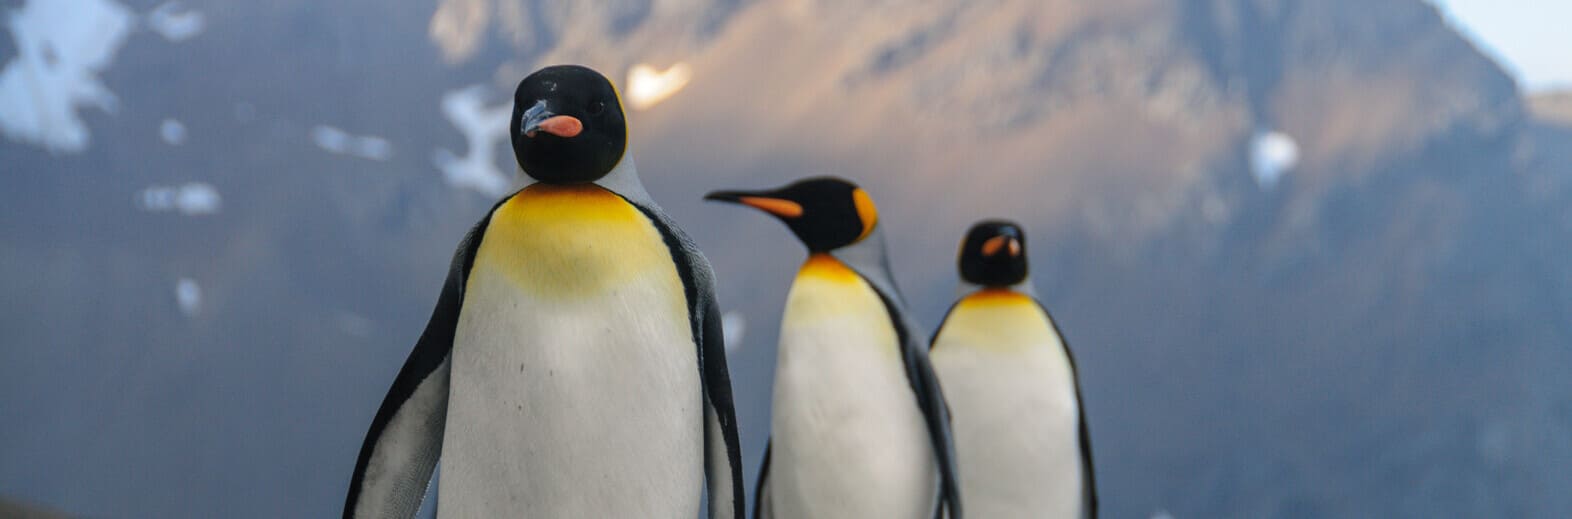 南極探險世紀之旅22日遊 <br>
福克蘭群島、南喬治亞島、南雪特蘭島、南奧克尼群島&南極半島、赫伯羅特航運漢薩靈感號五星級探險級遊輪